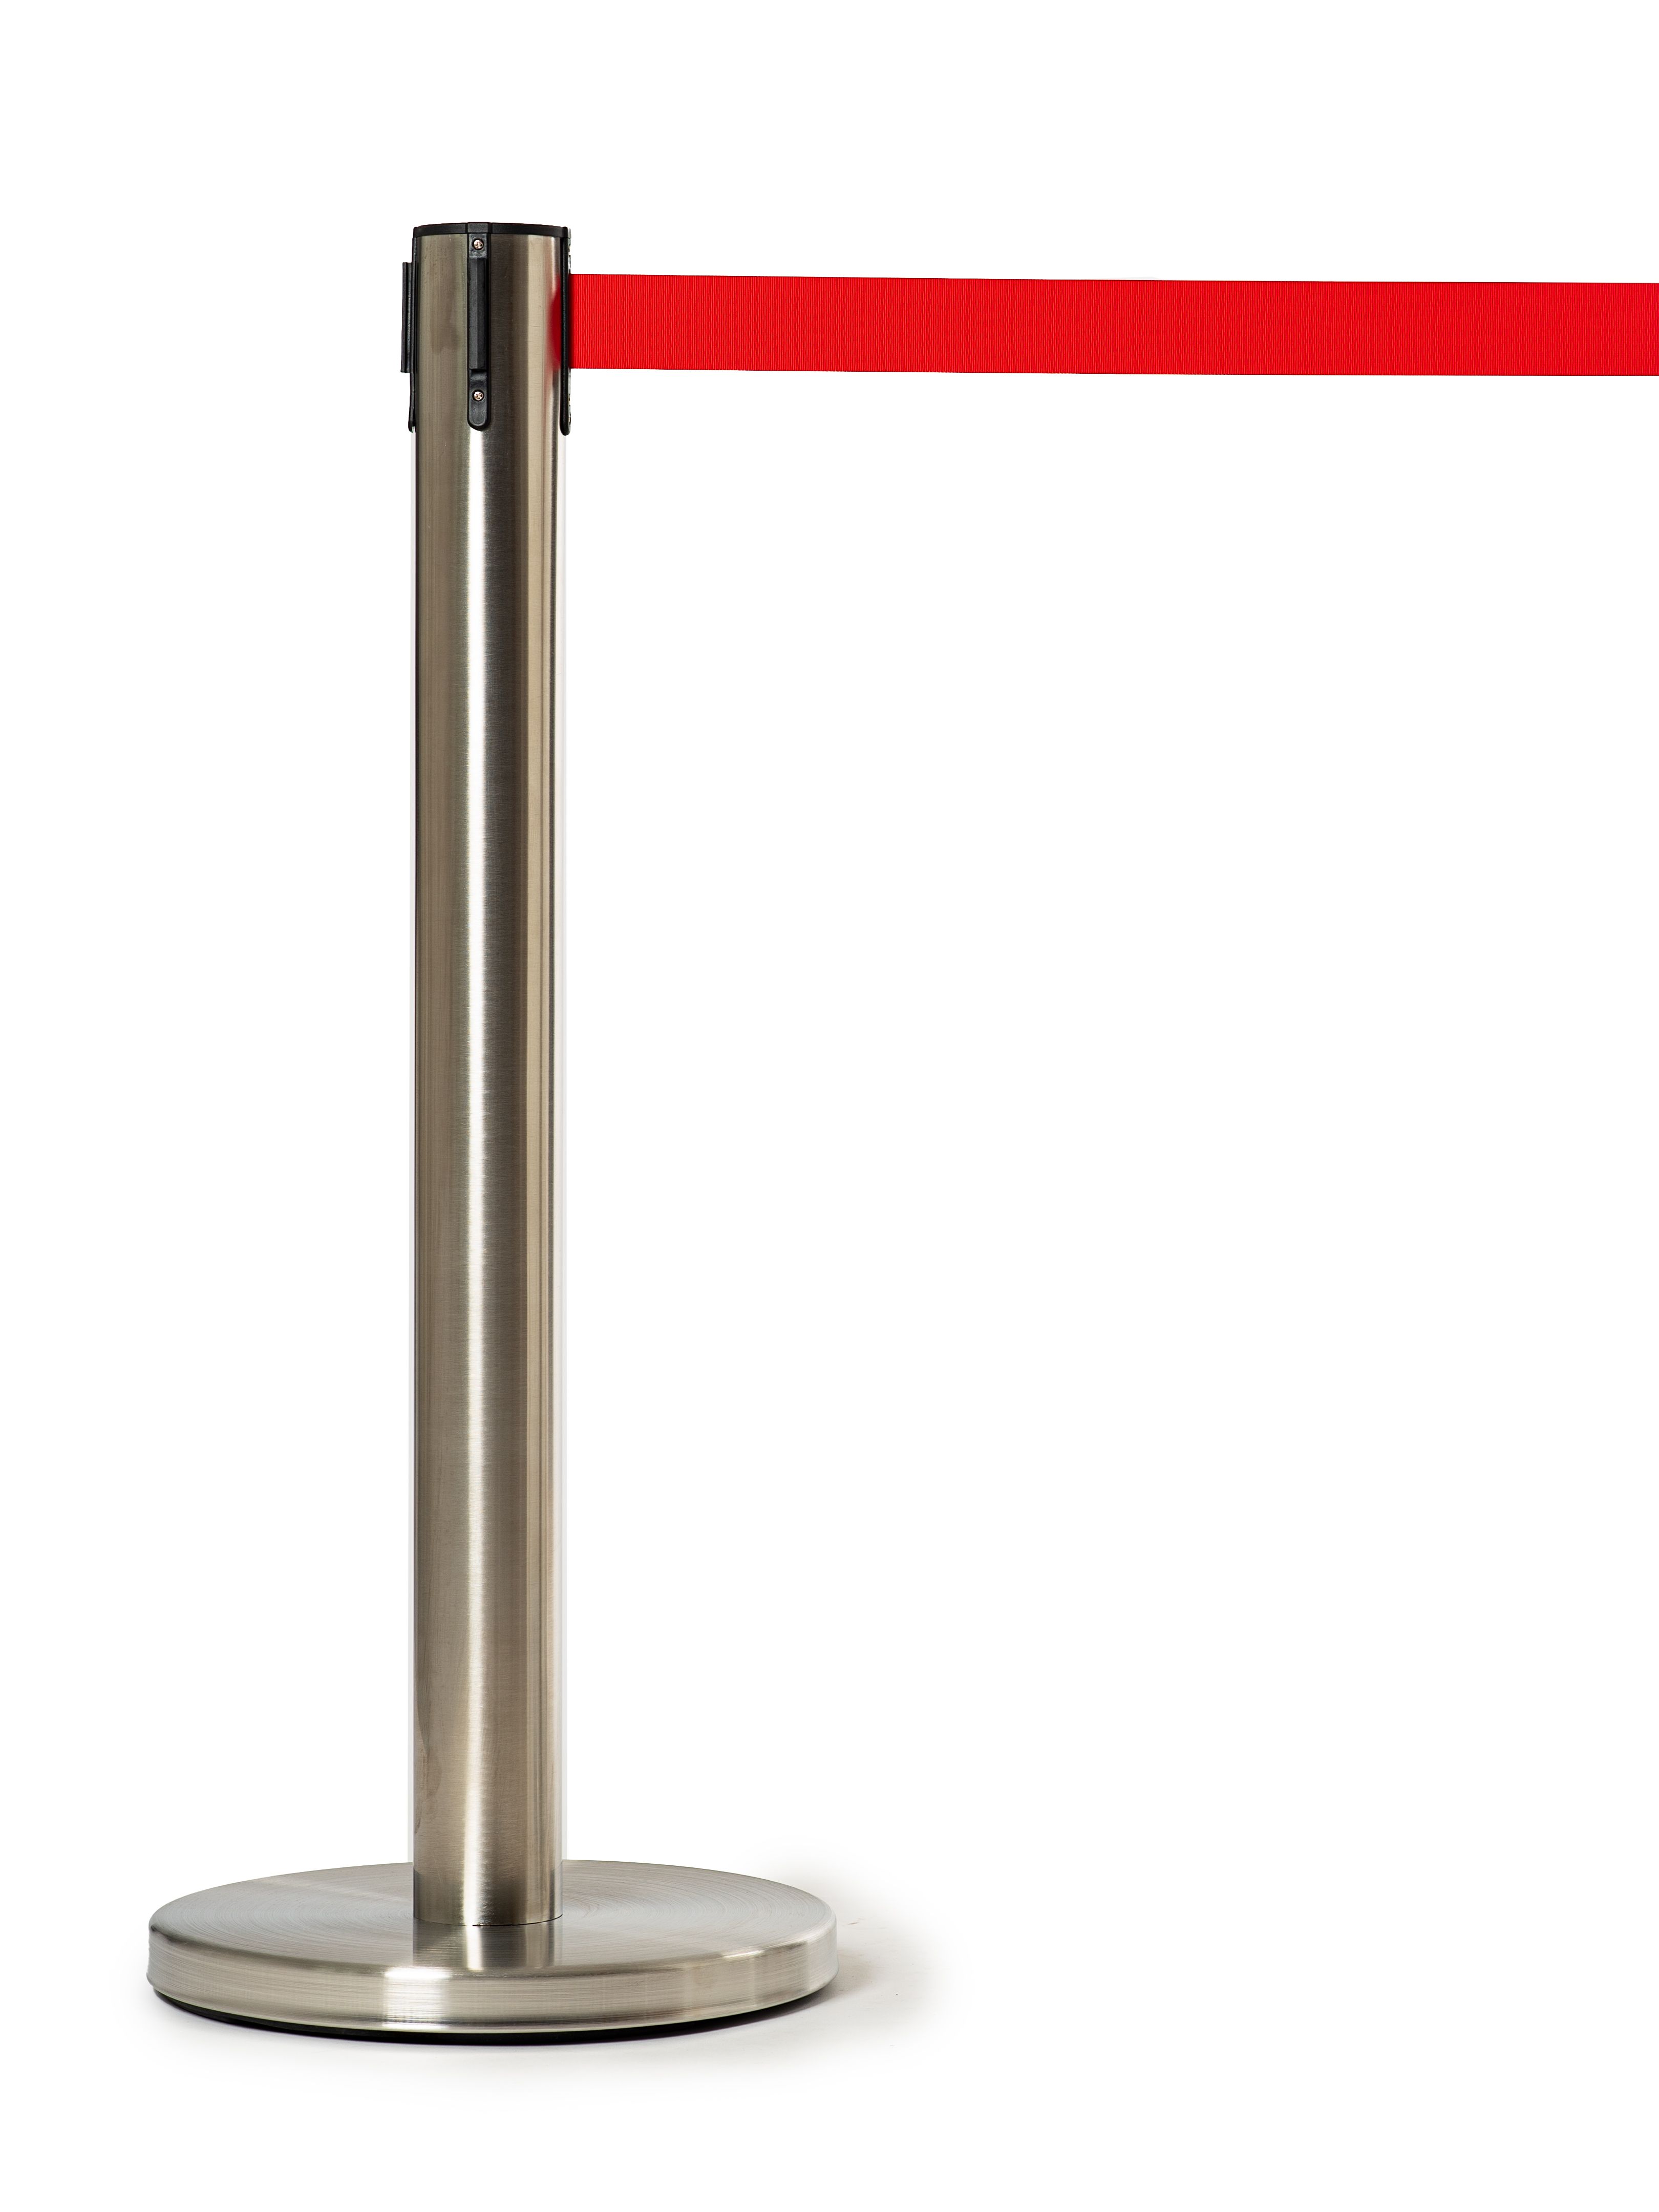 Мобильная стойка с красной лентой 5 метров мобильная стойка ограждения с вытяжной красной лентой 5 метров 15 1 7